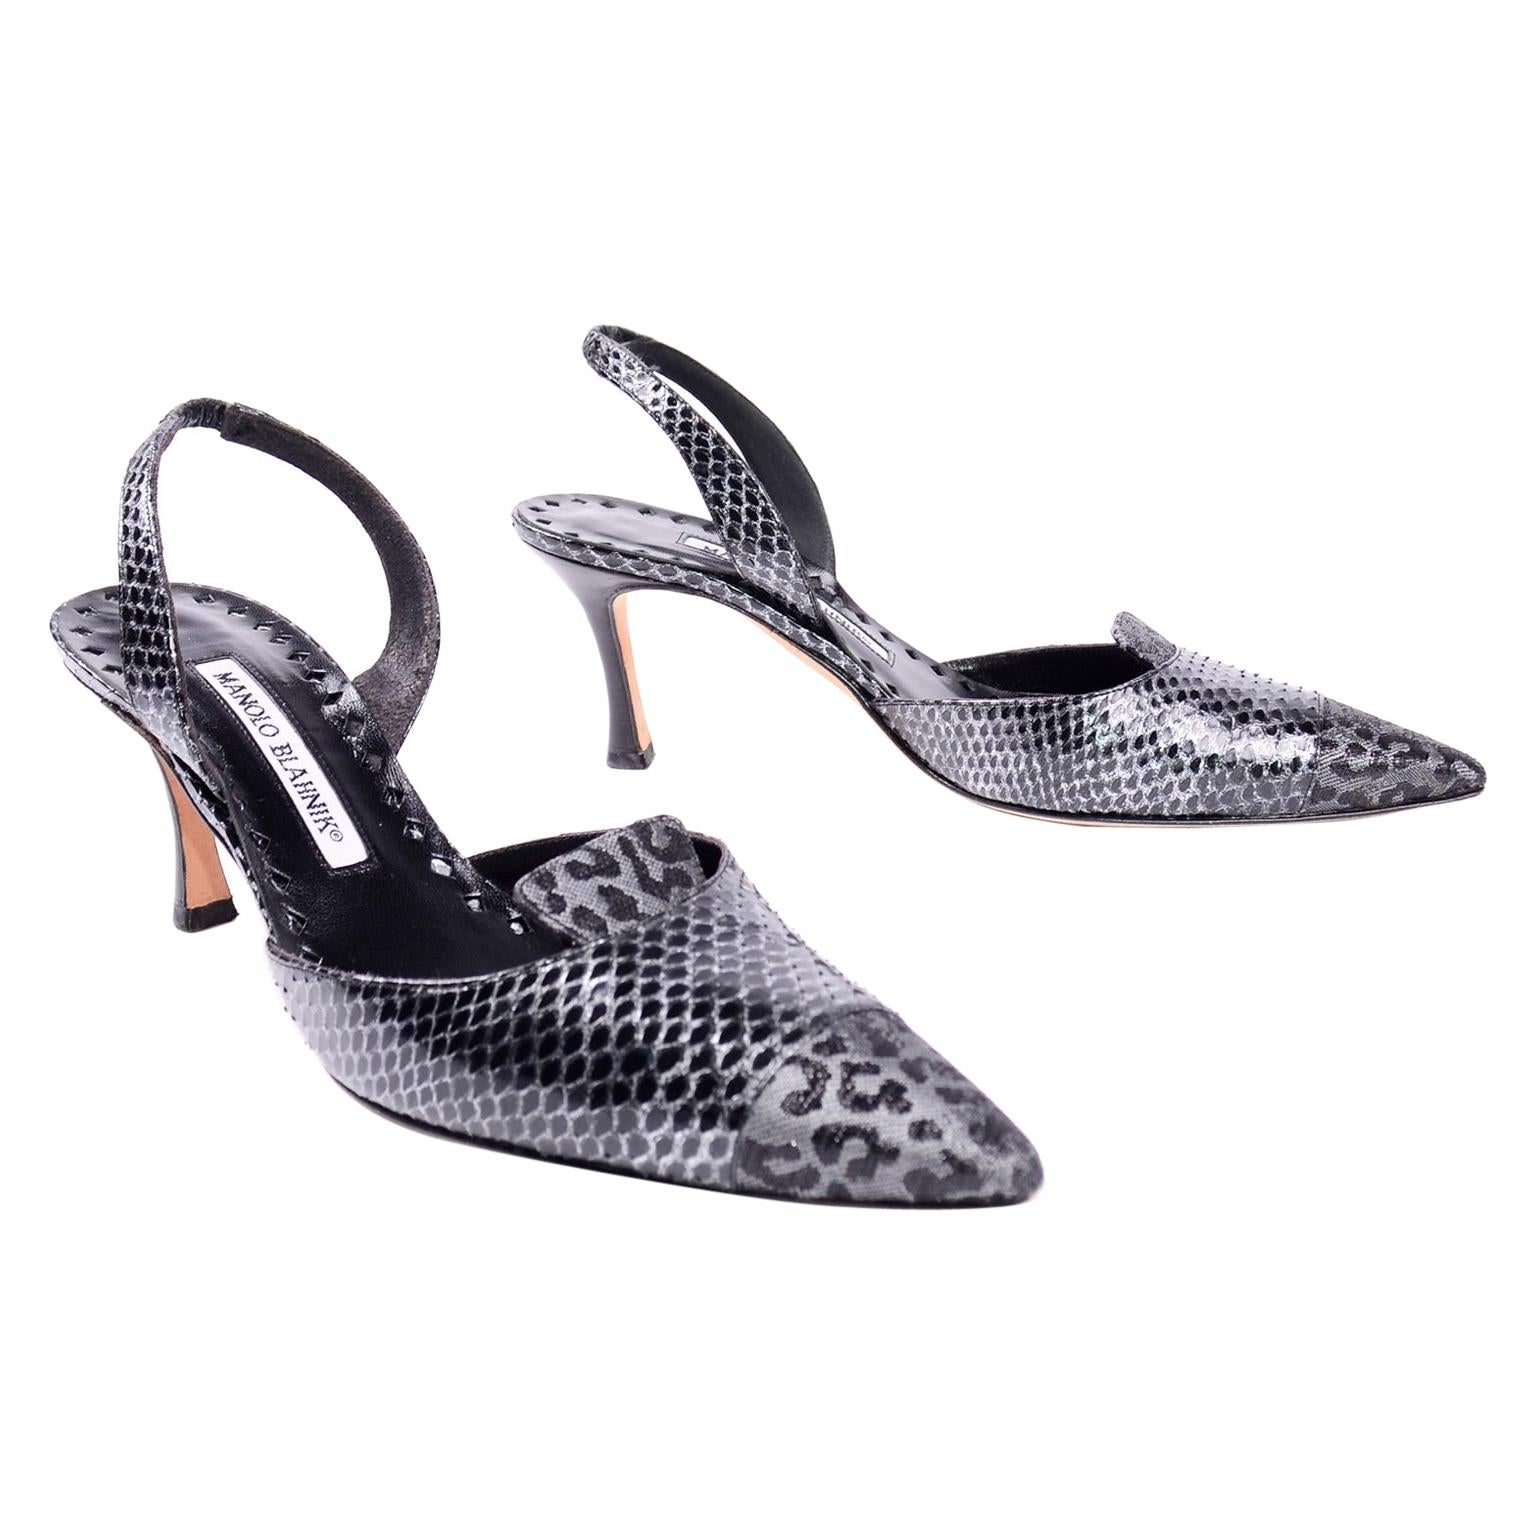 Manolo Blahnik Ploiesti Snakeskin Shoes With Leopard Print Toes